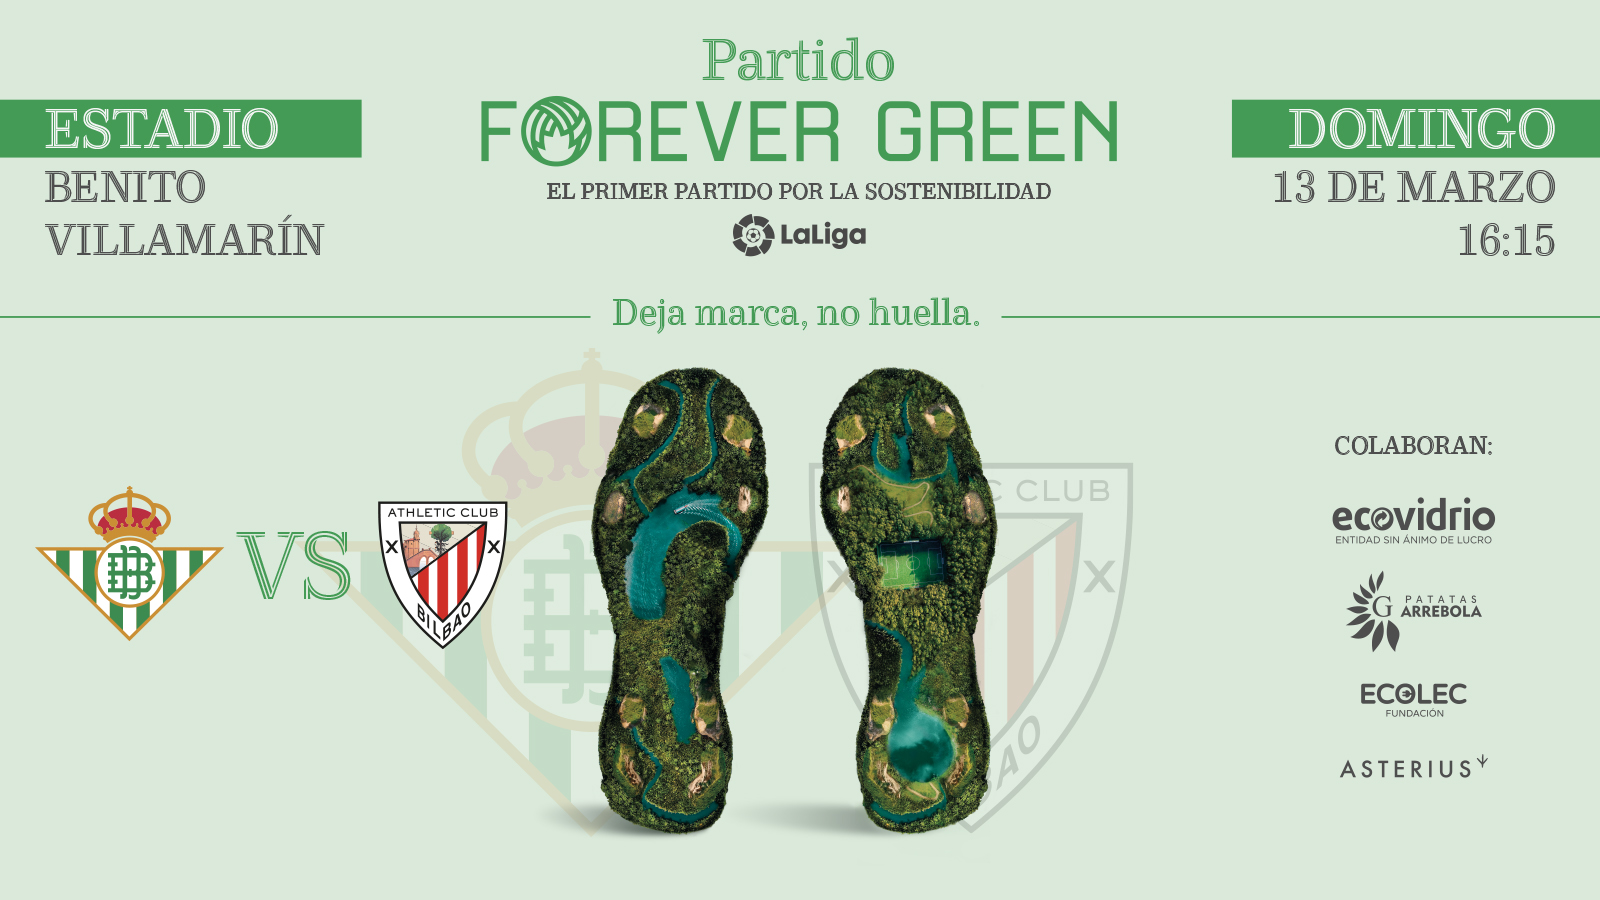 El Real Betis-Athletic Club, partido Forever Green, será el primer partido por la sostenibilidad de LaLiga